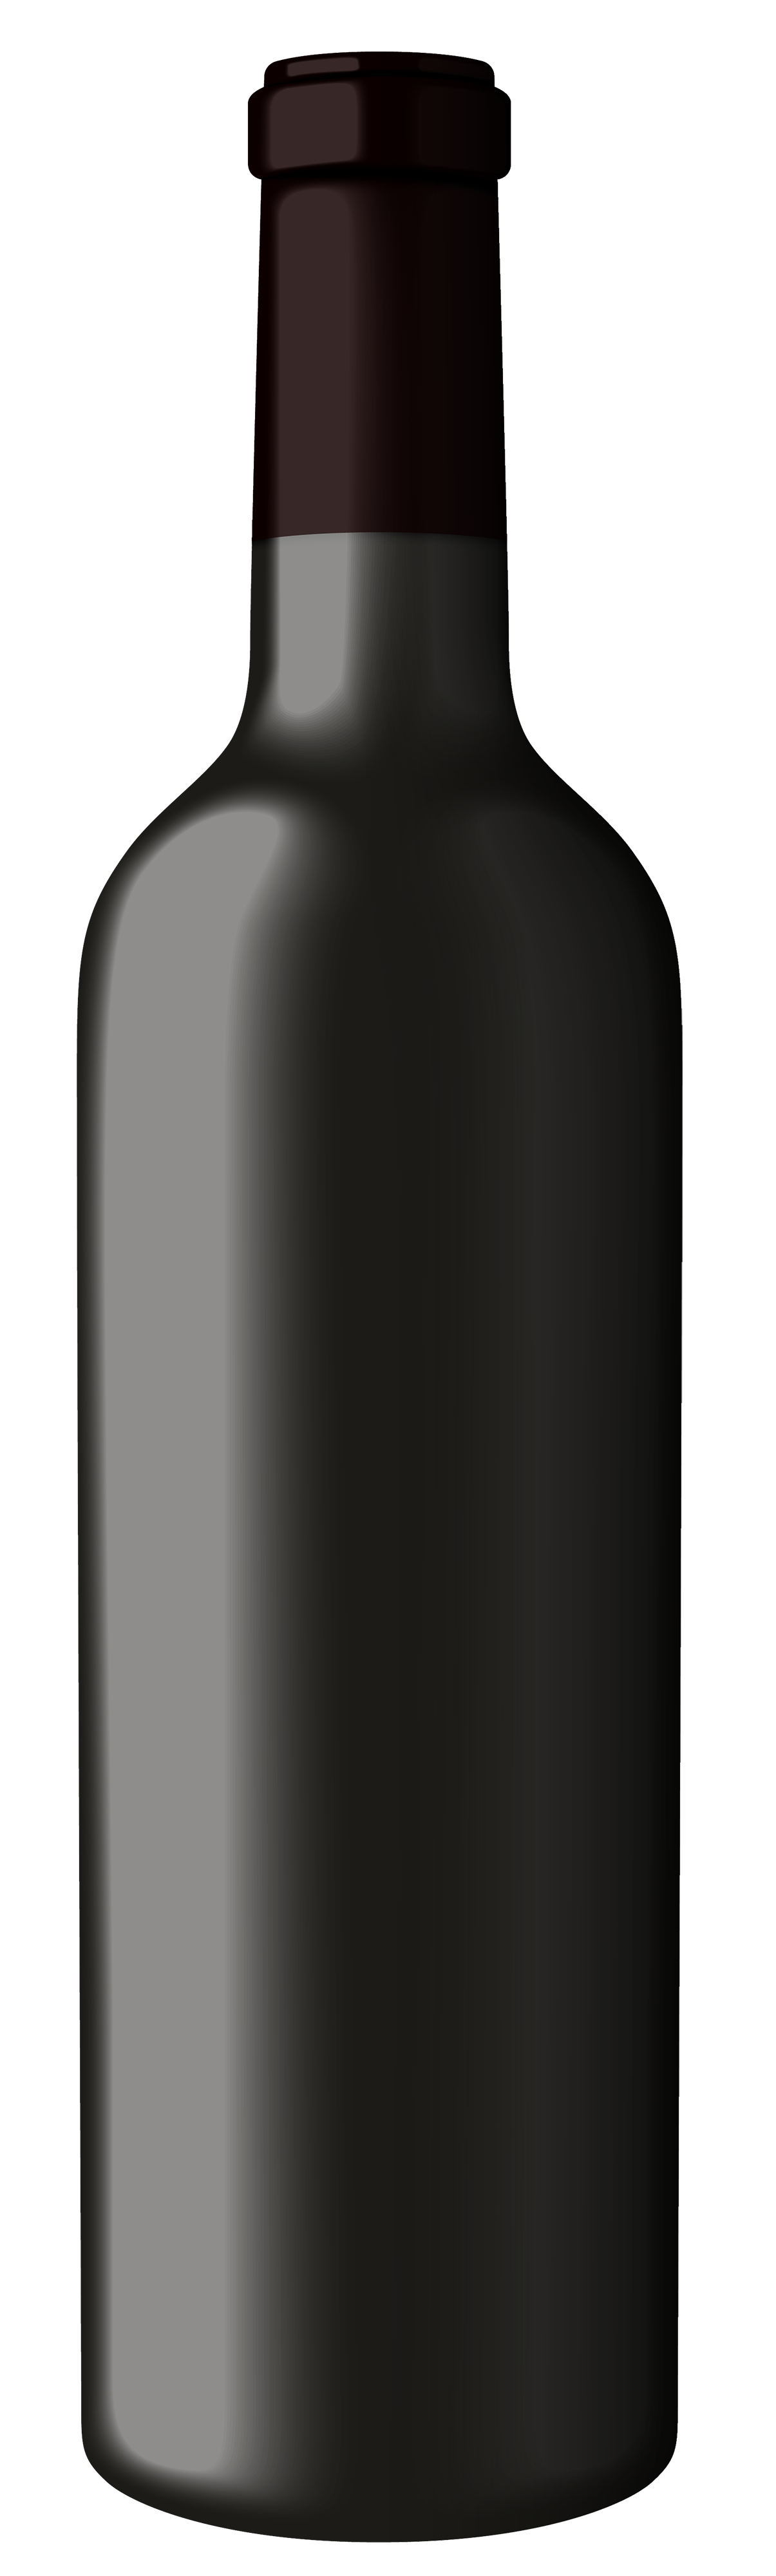 full bottle clipart black